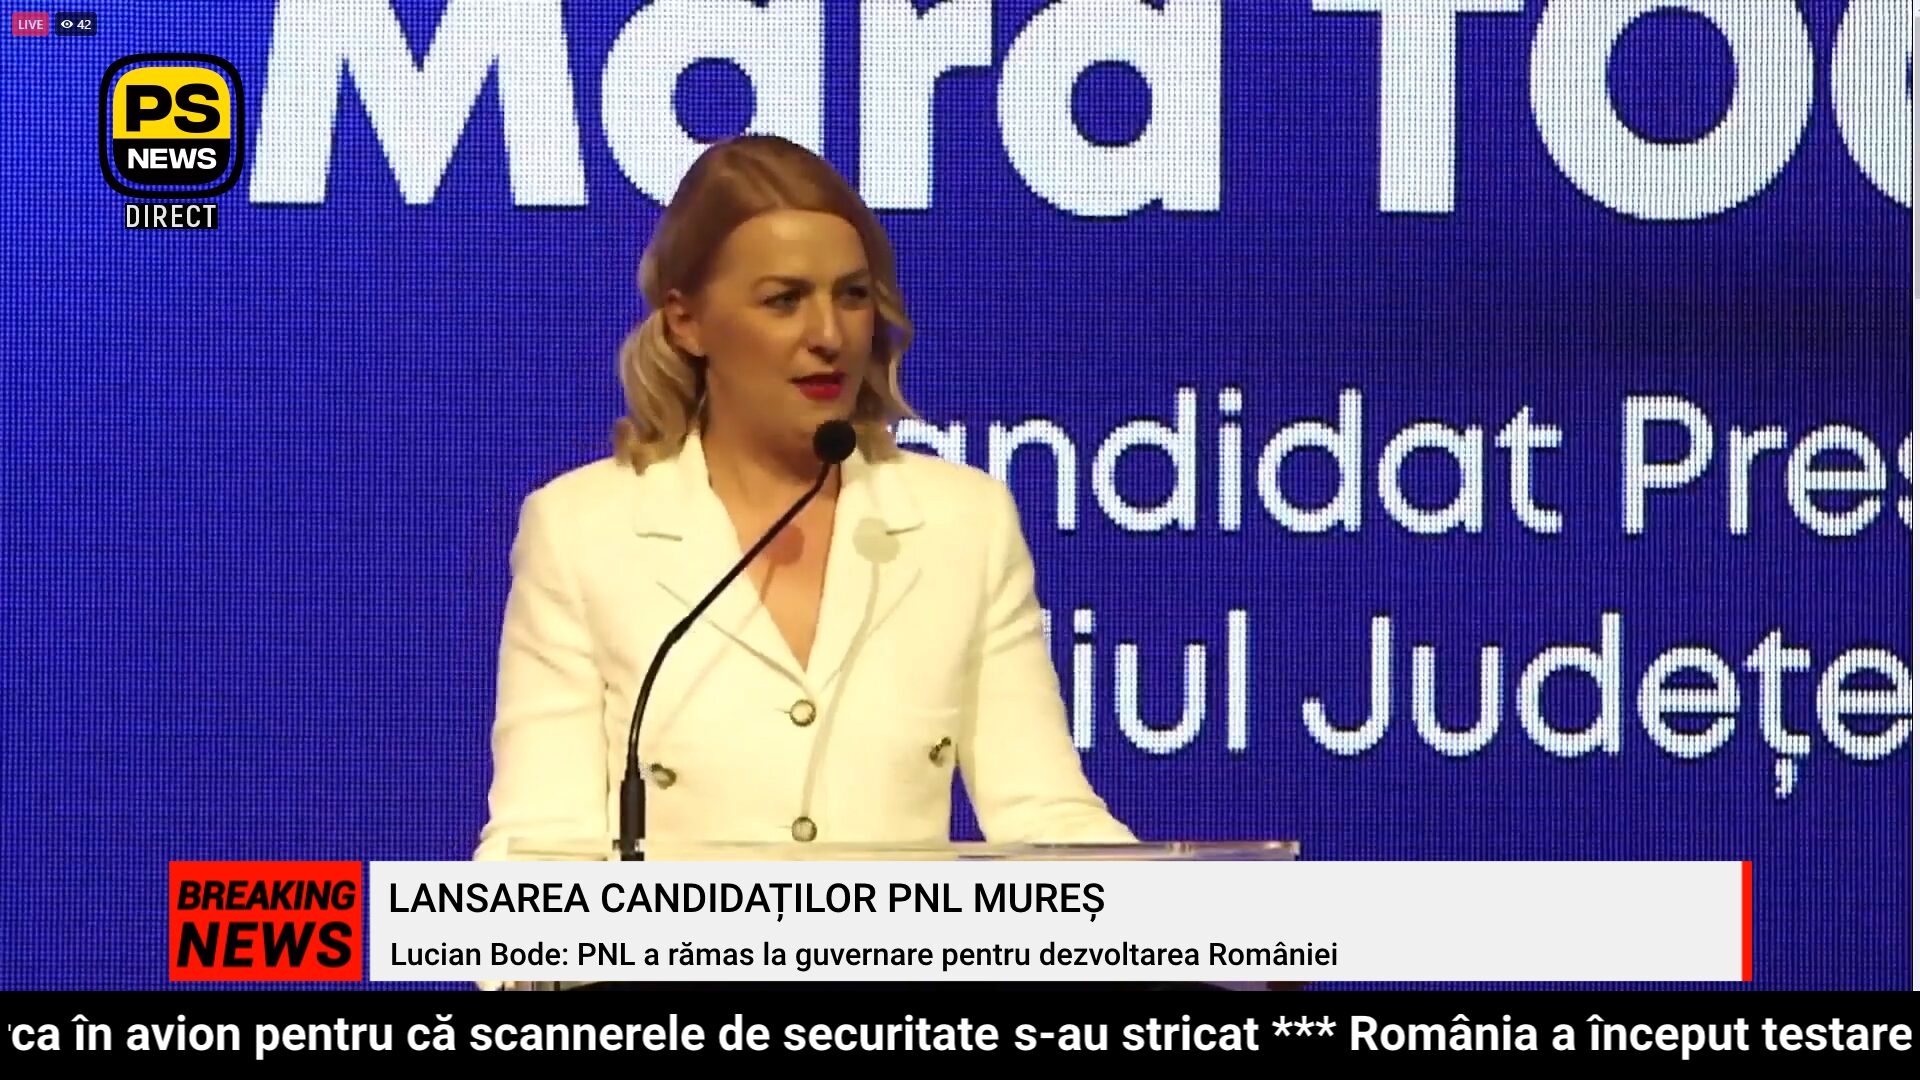 PS News TV | Lansarea candidaților PNL Mureș